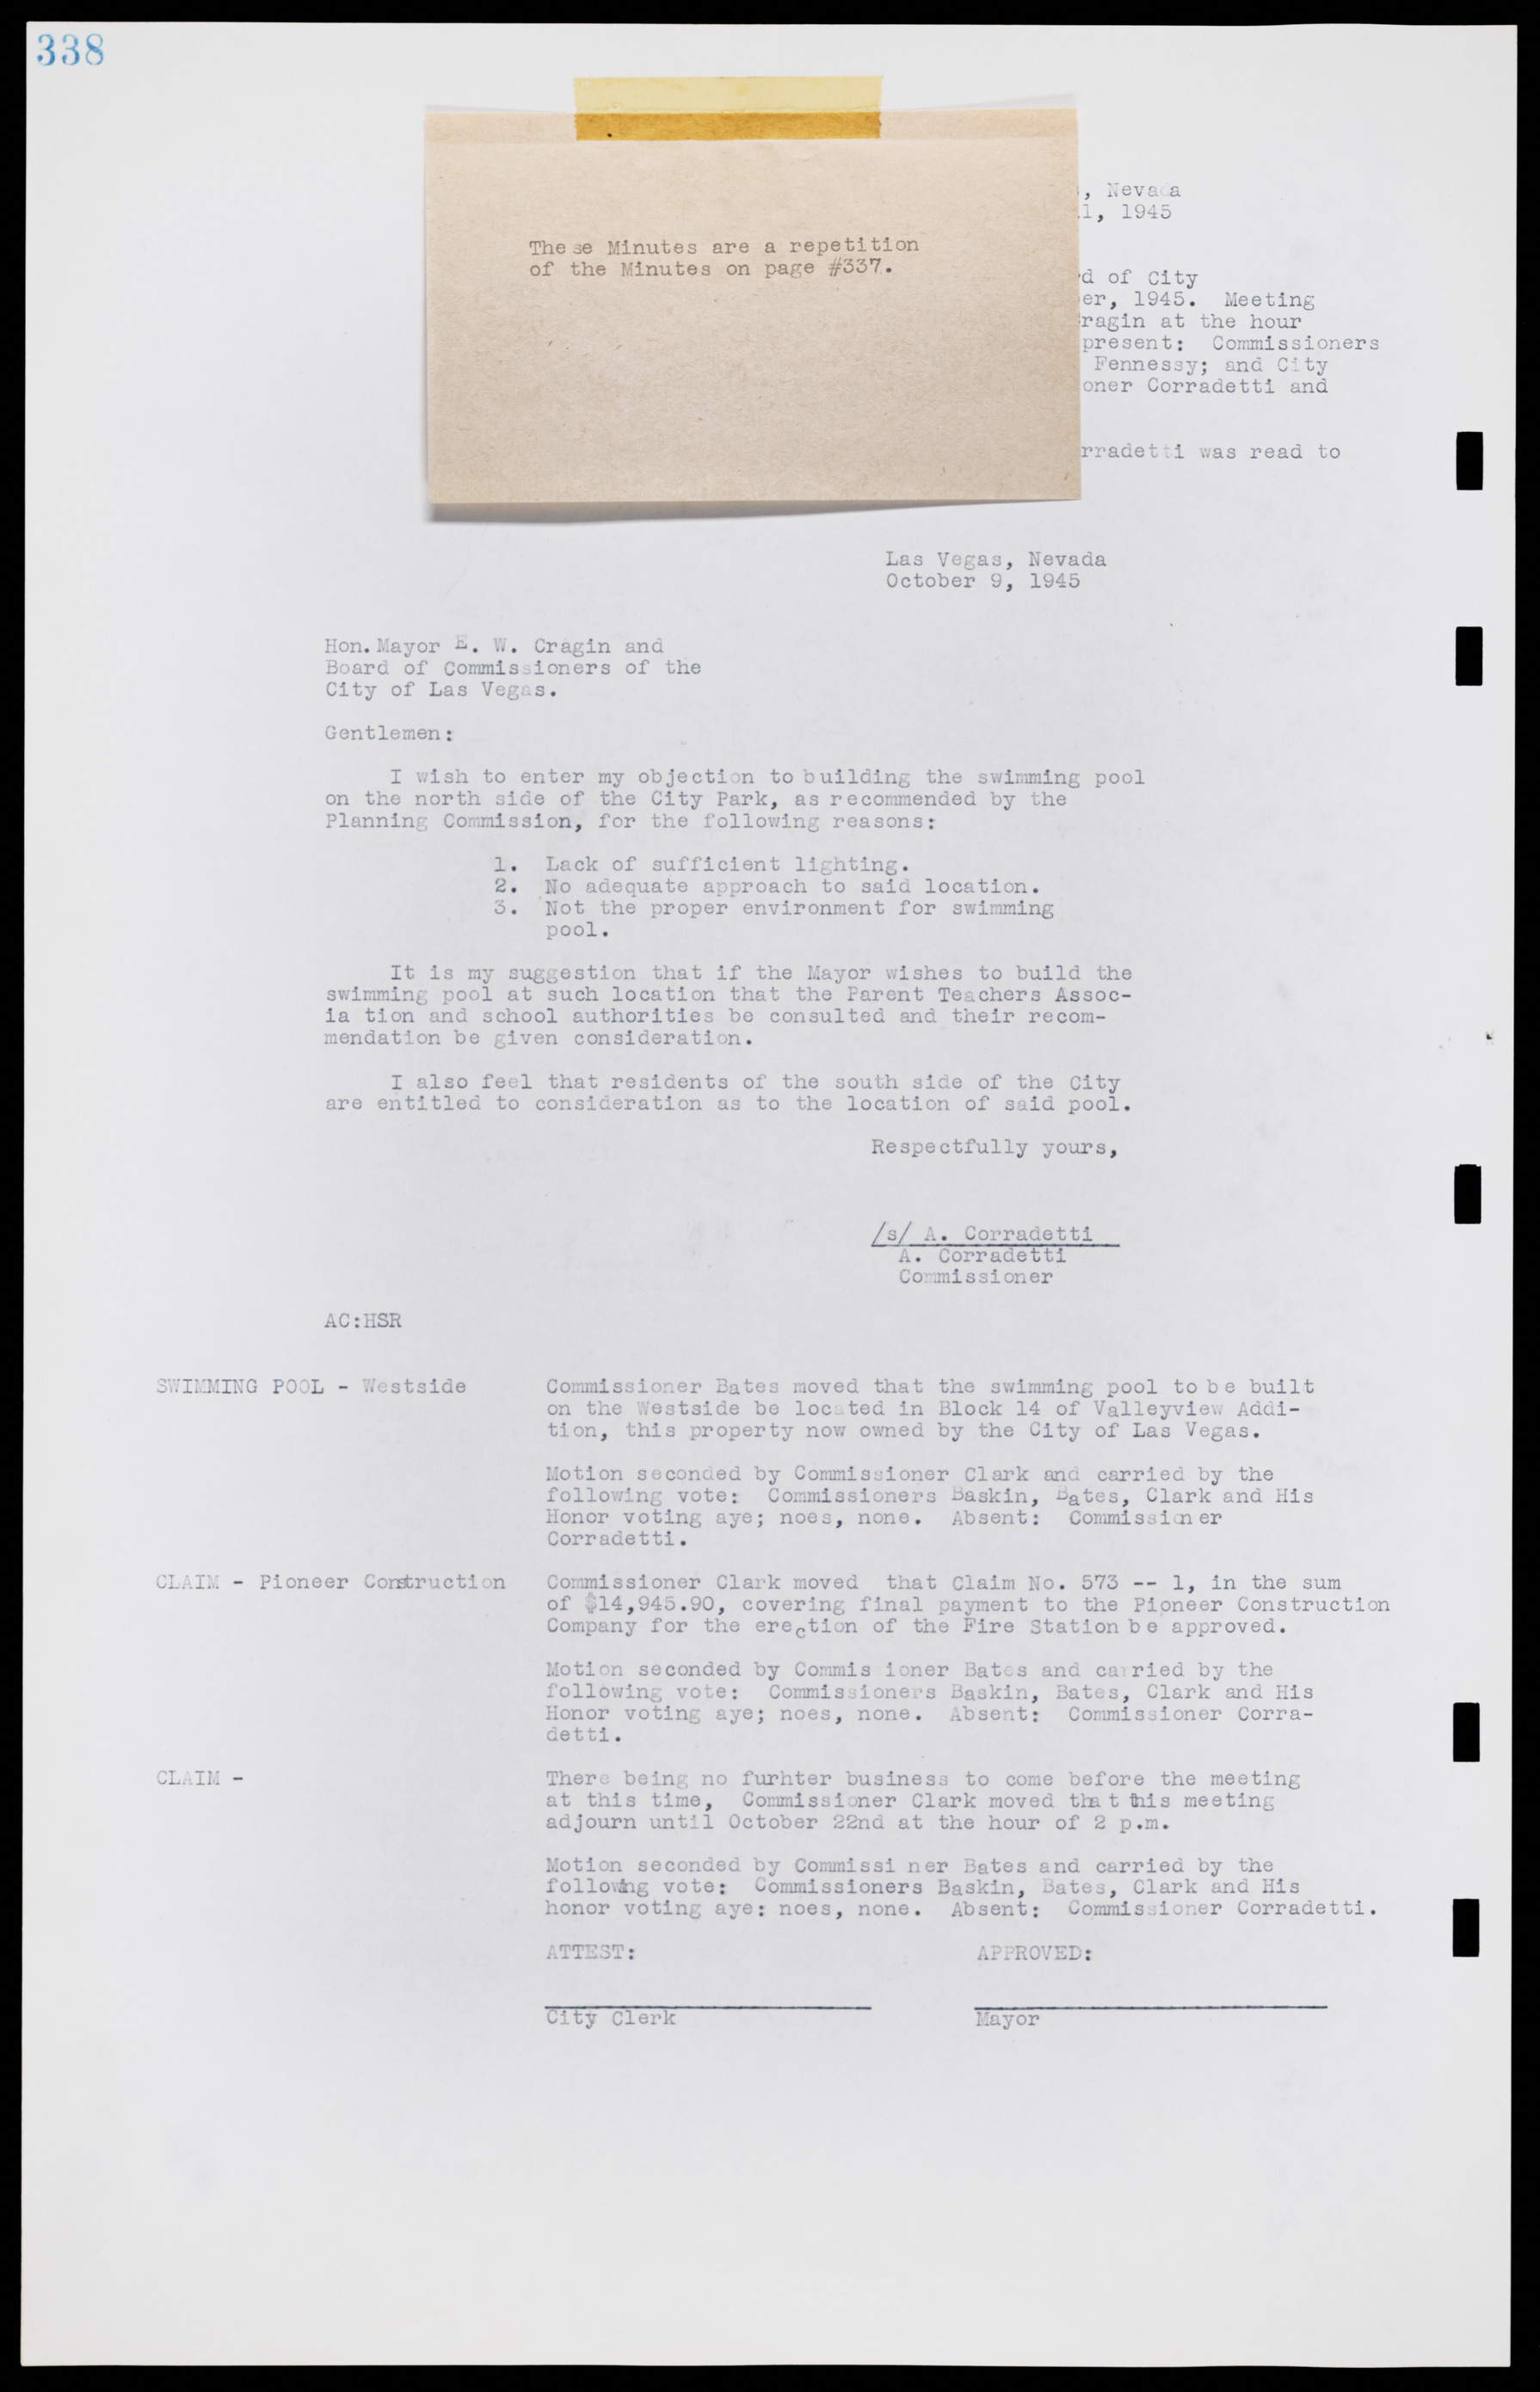 Las Vegas City Commission Minutes, August 11, 1942 to December 30, 1946, lvc000005-362